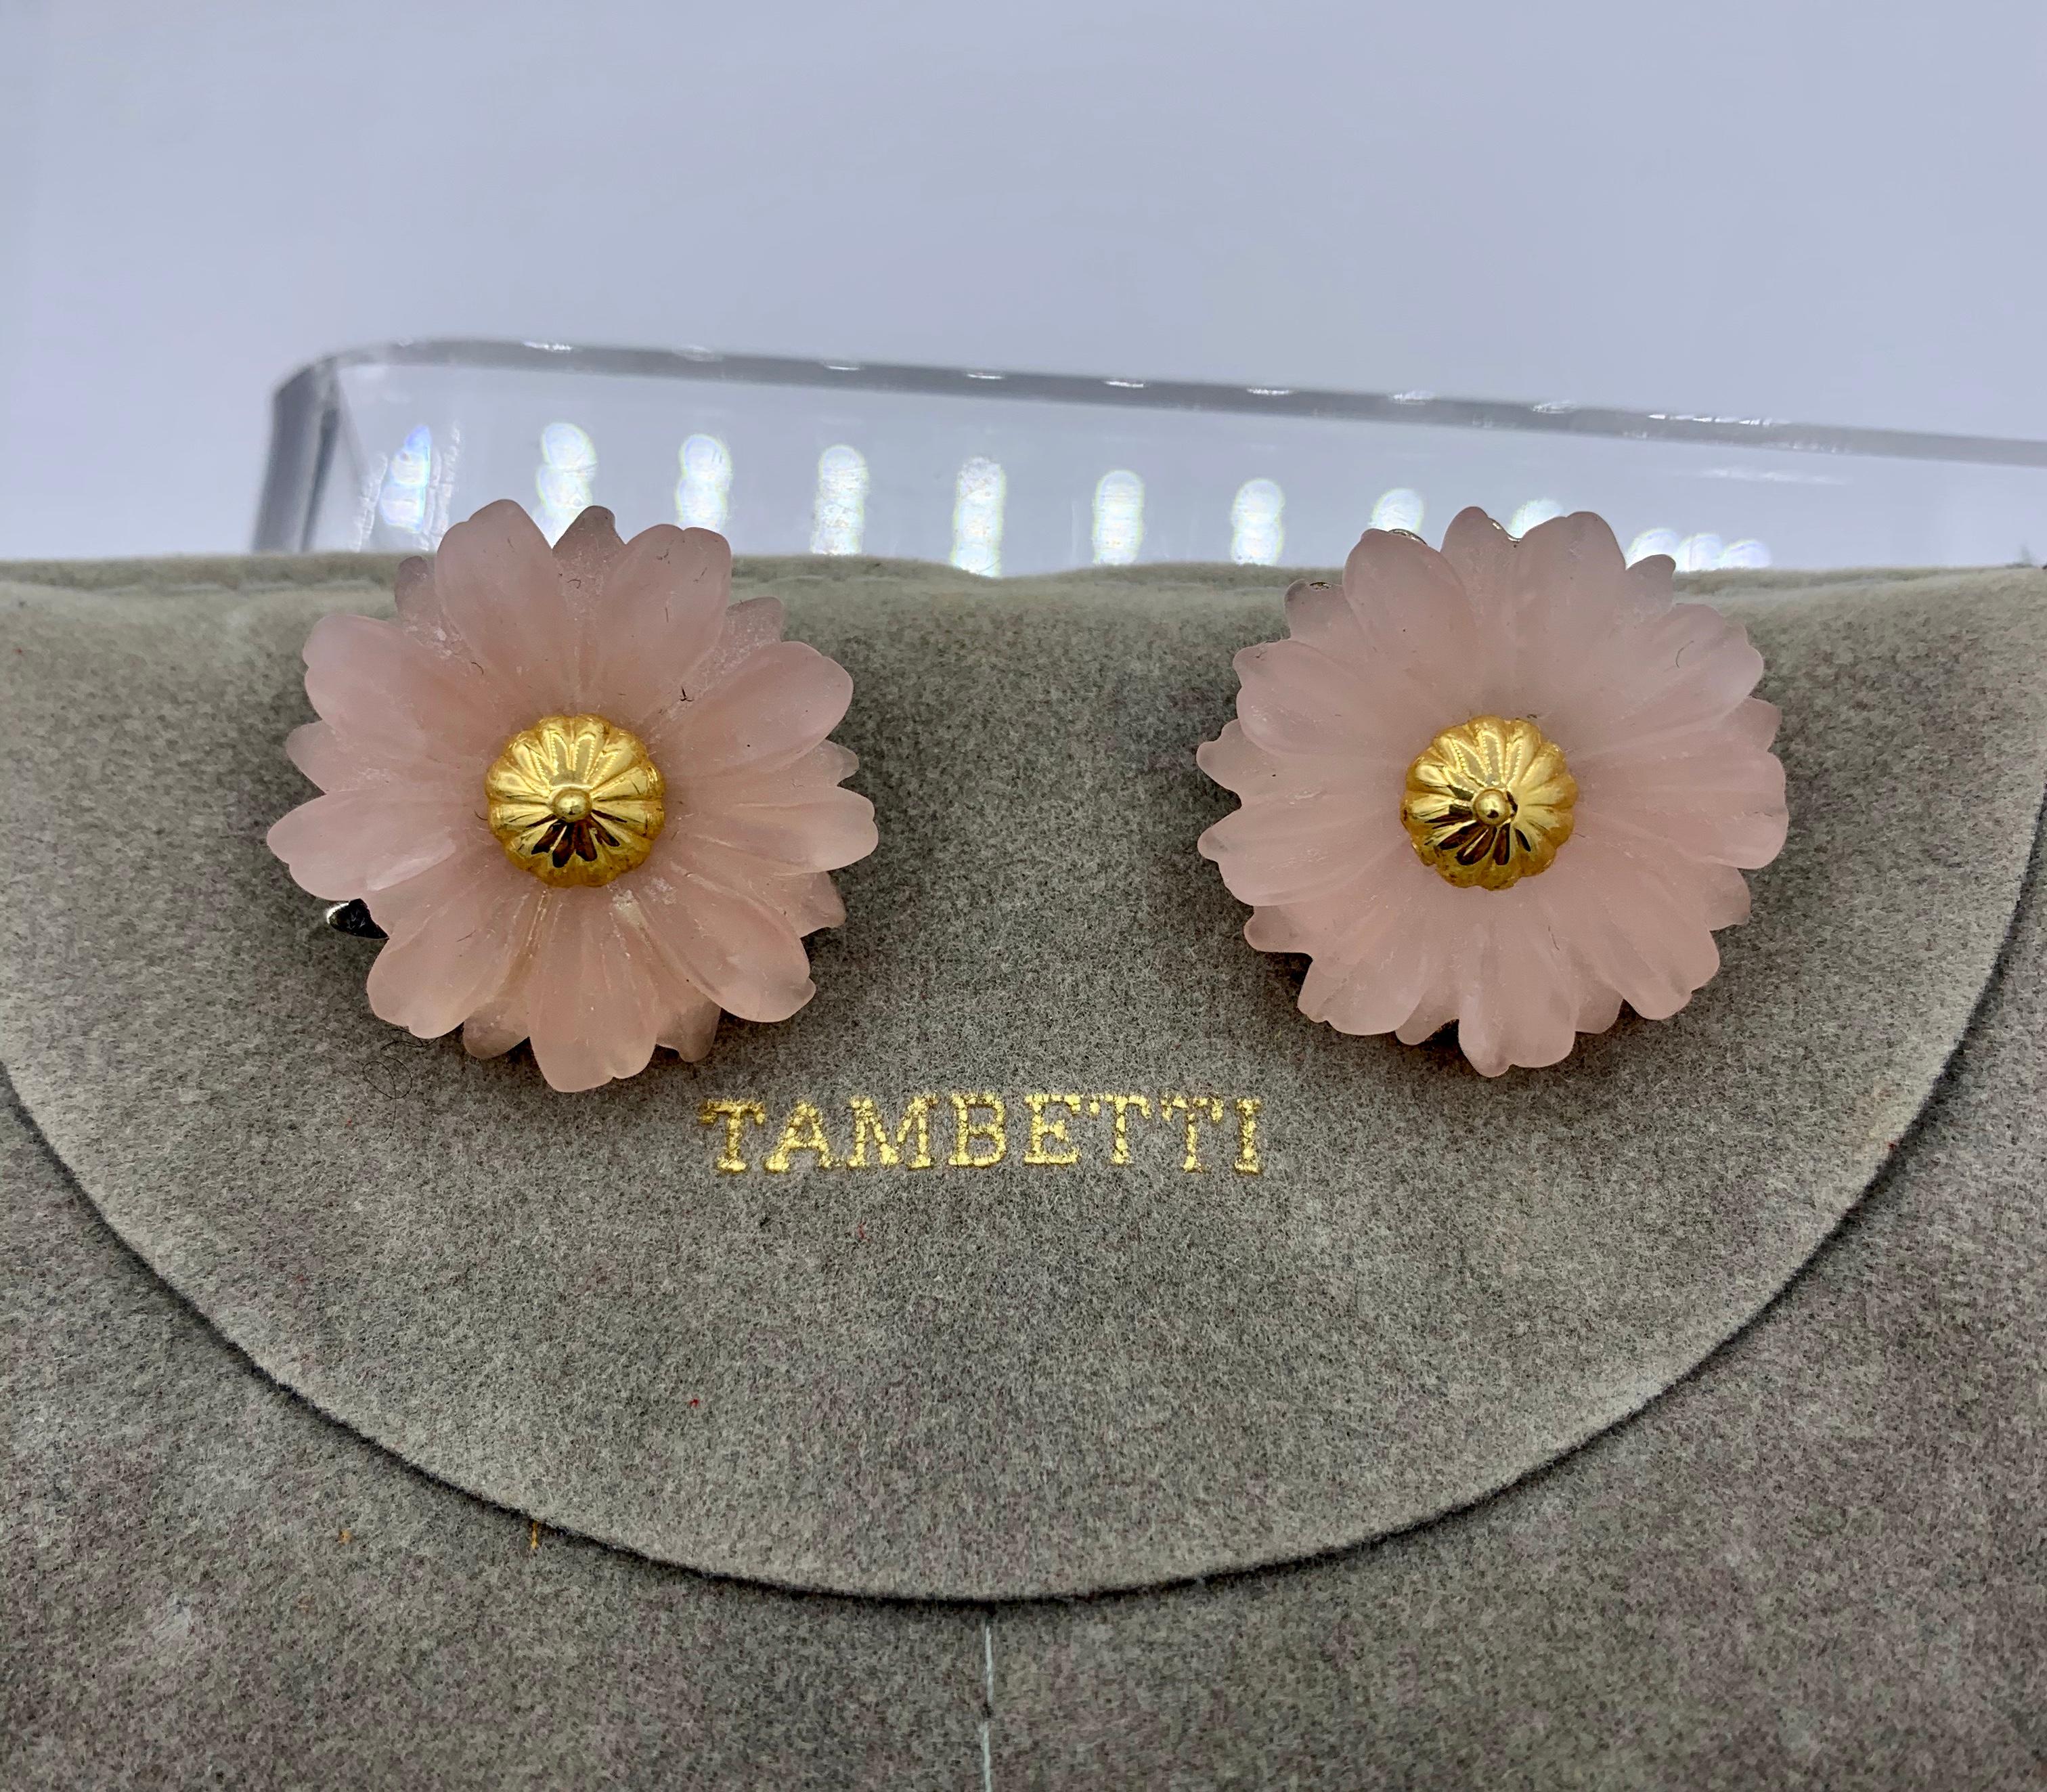 Dies sind atemberaubende signierte Tambetti Ohrring Ohrclips in Rosenquarz jeweils als geschnitzte rosa Blume entworfen, in der Mitte mit einem 18 Karat Gold Akzent gesetzt.  Die Ohrringe stammen garantiert aus dem Nachlass der berühmten britischen